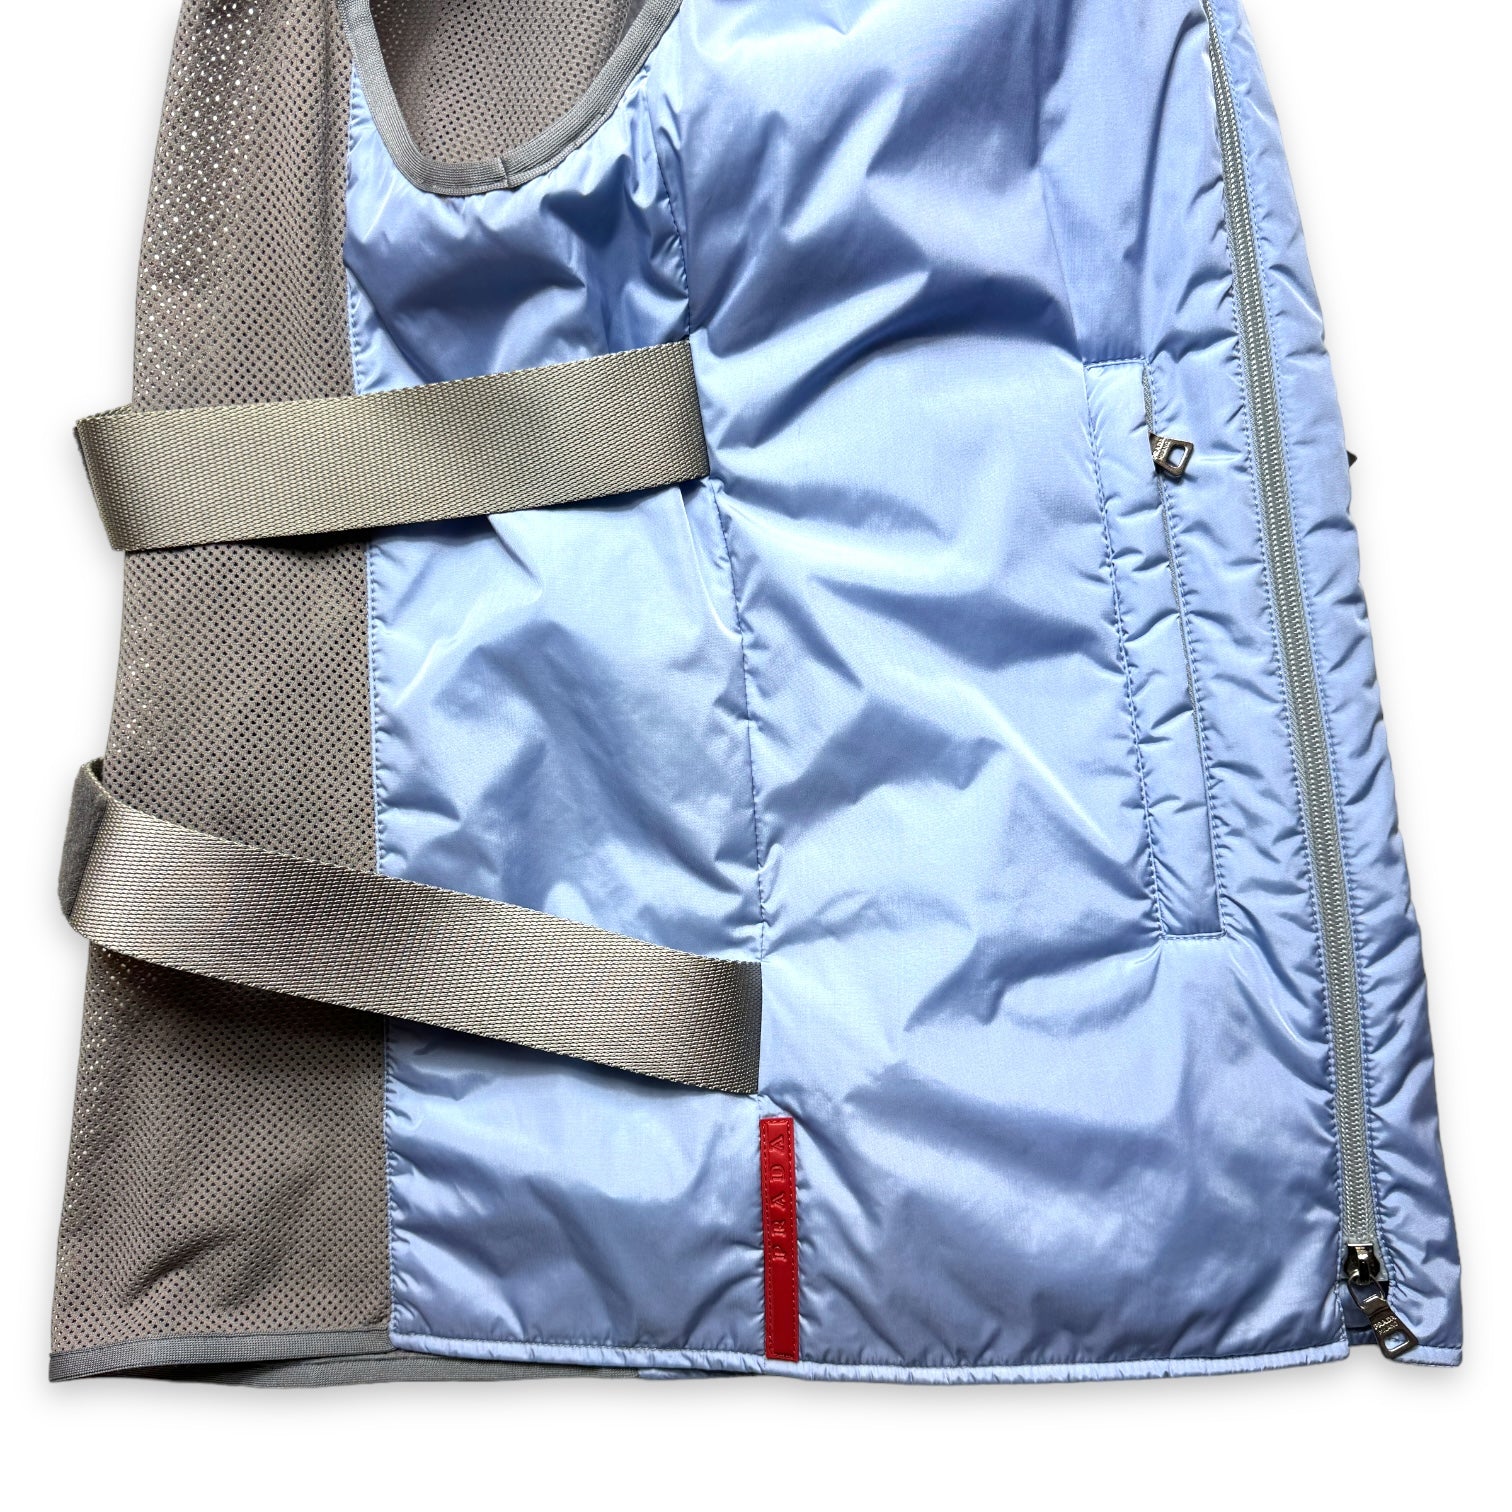 SS99' Prada Sport Baby Blue Padded Nylon Bondage Strap Vest